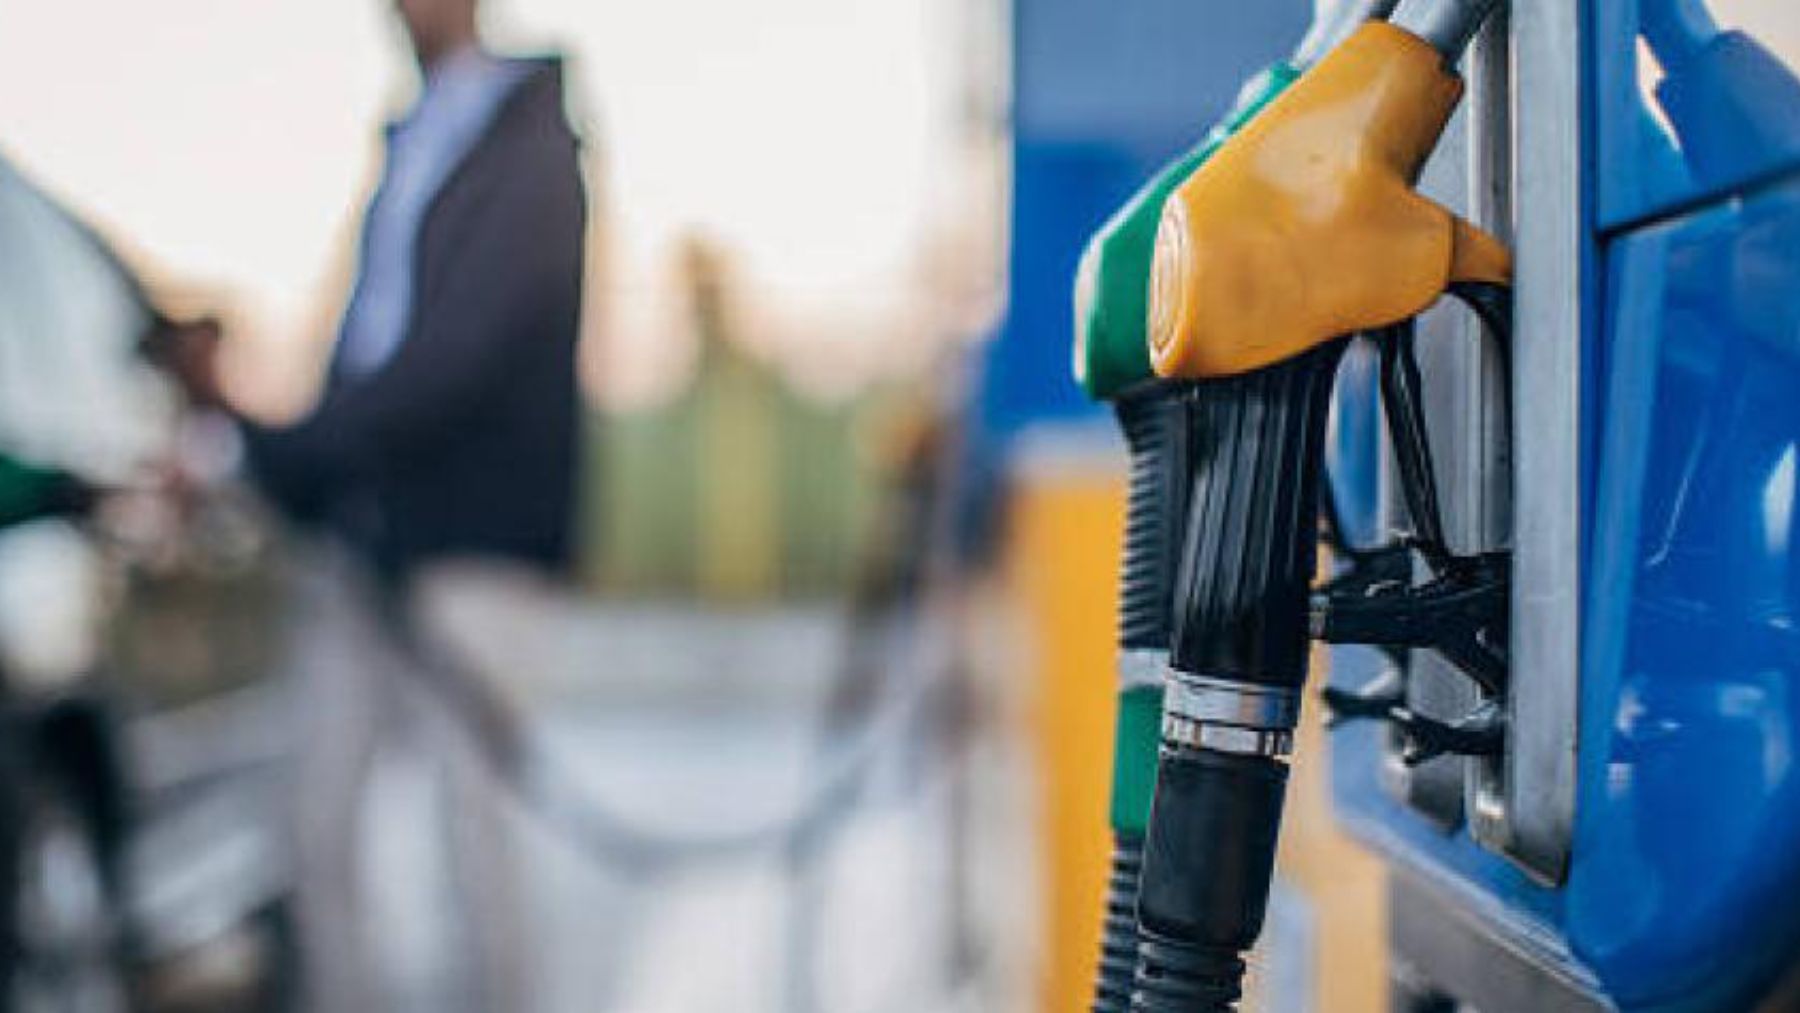 El descuento en gasolina por parte de Repsol se alarga